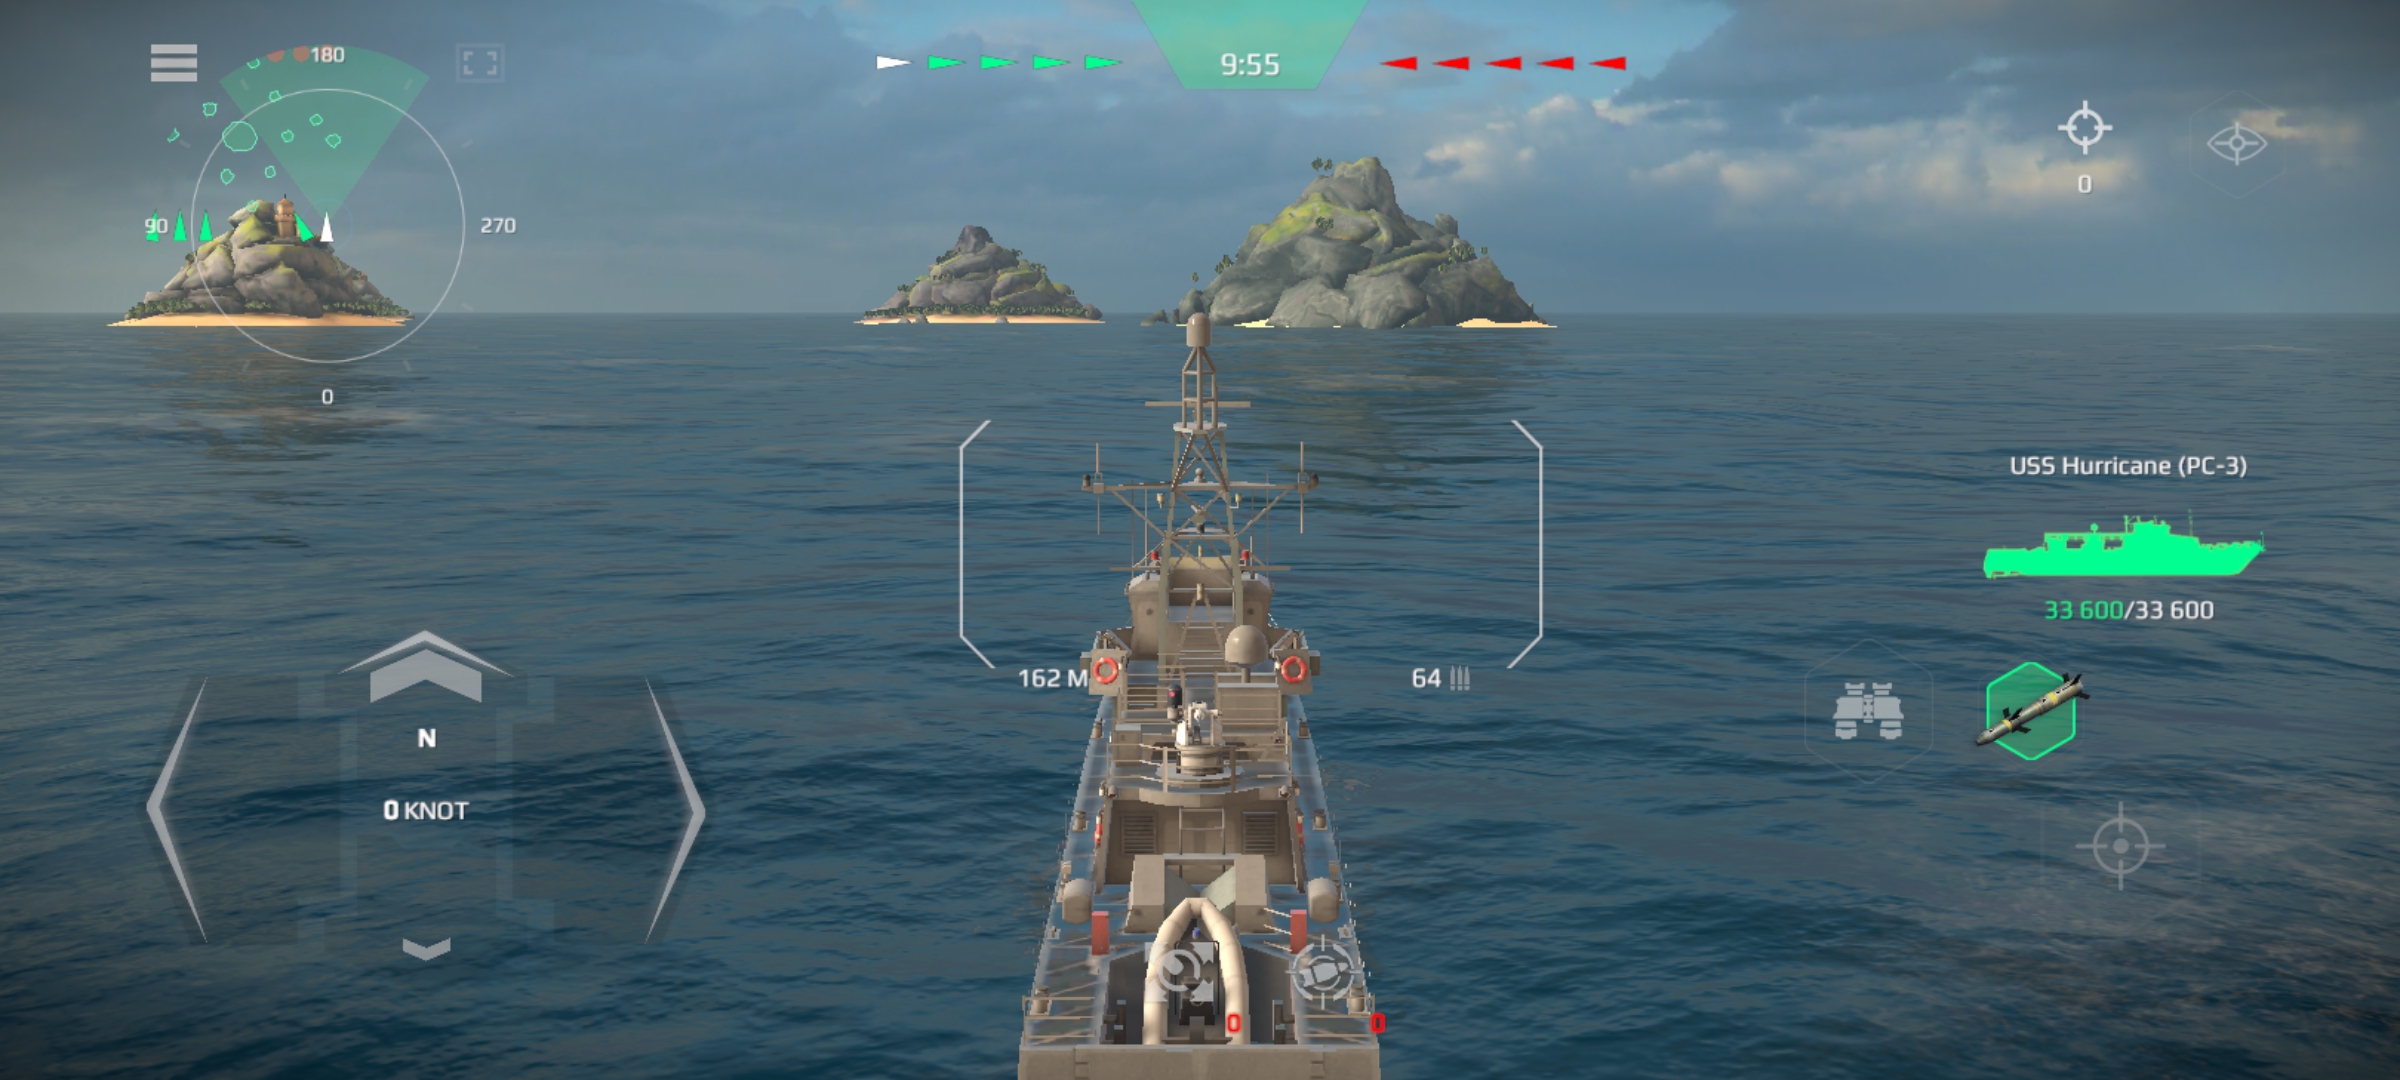 Giao diện chính trong Modern Warships khi tham chiến cùng với đồng đội của bạn